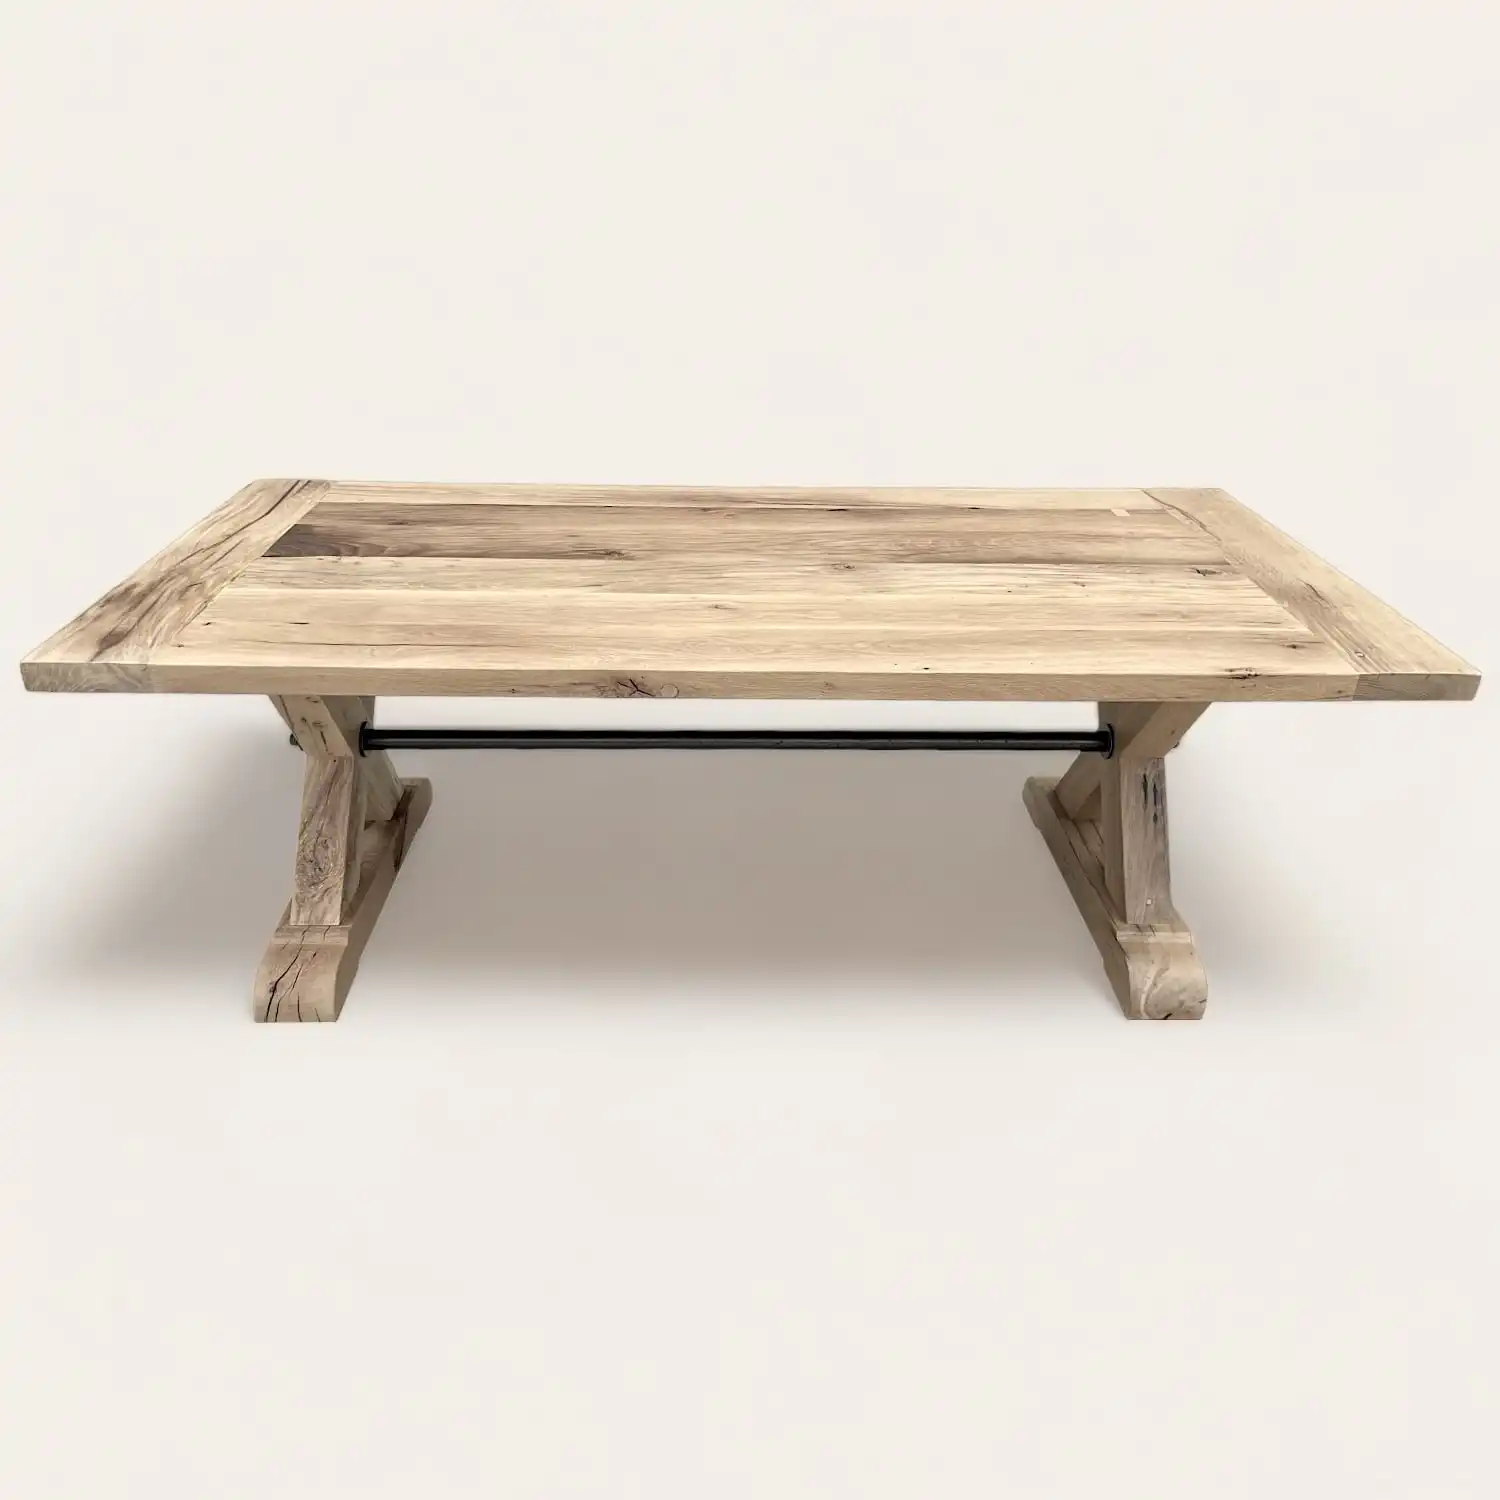  Une table basse en bois ancien sur fond blanc. 